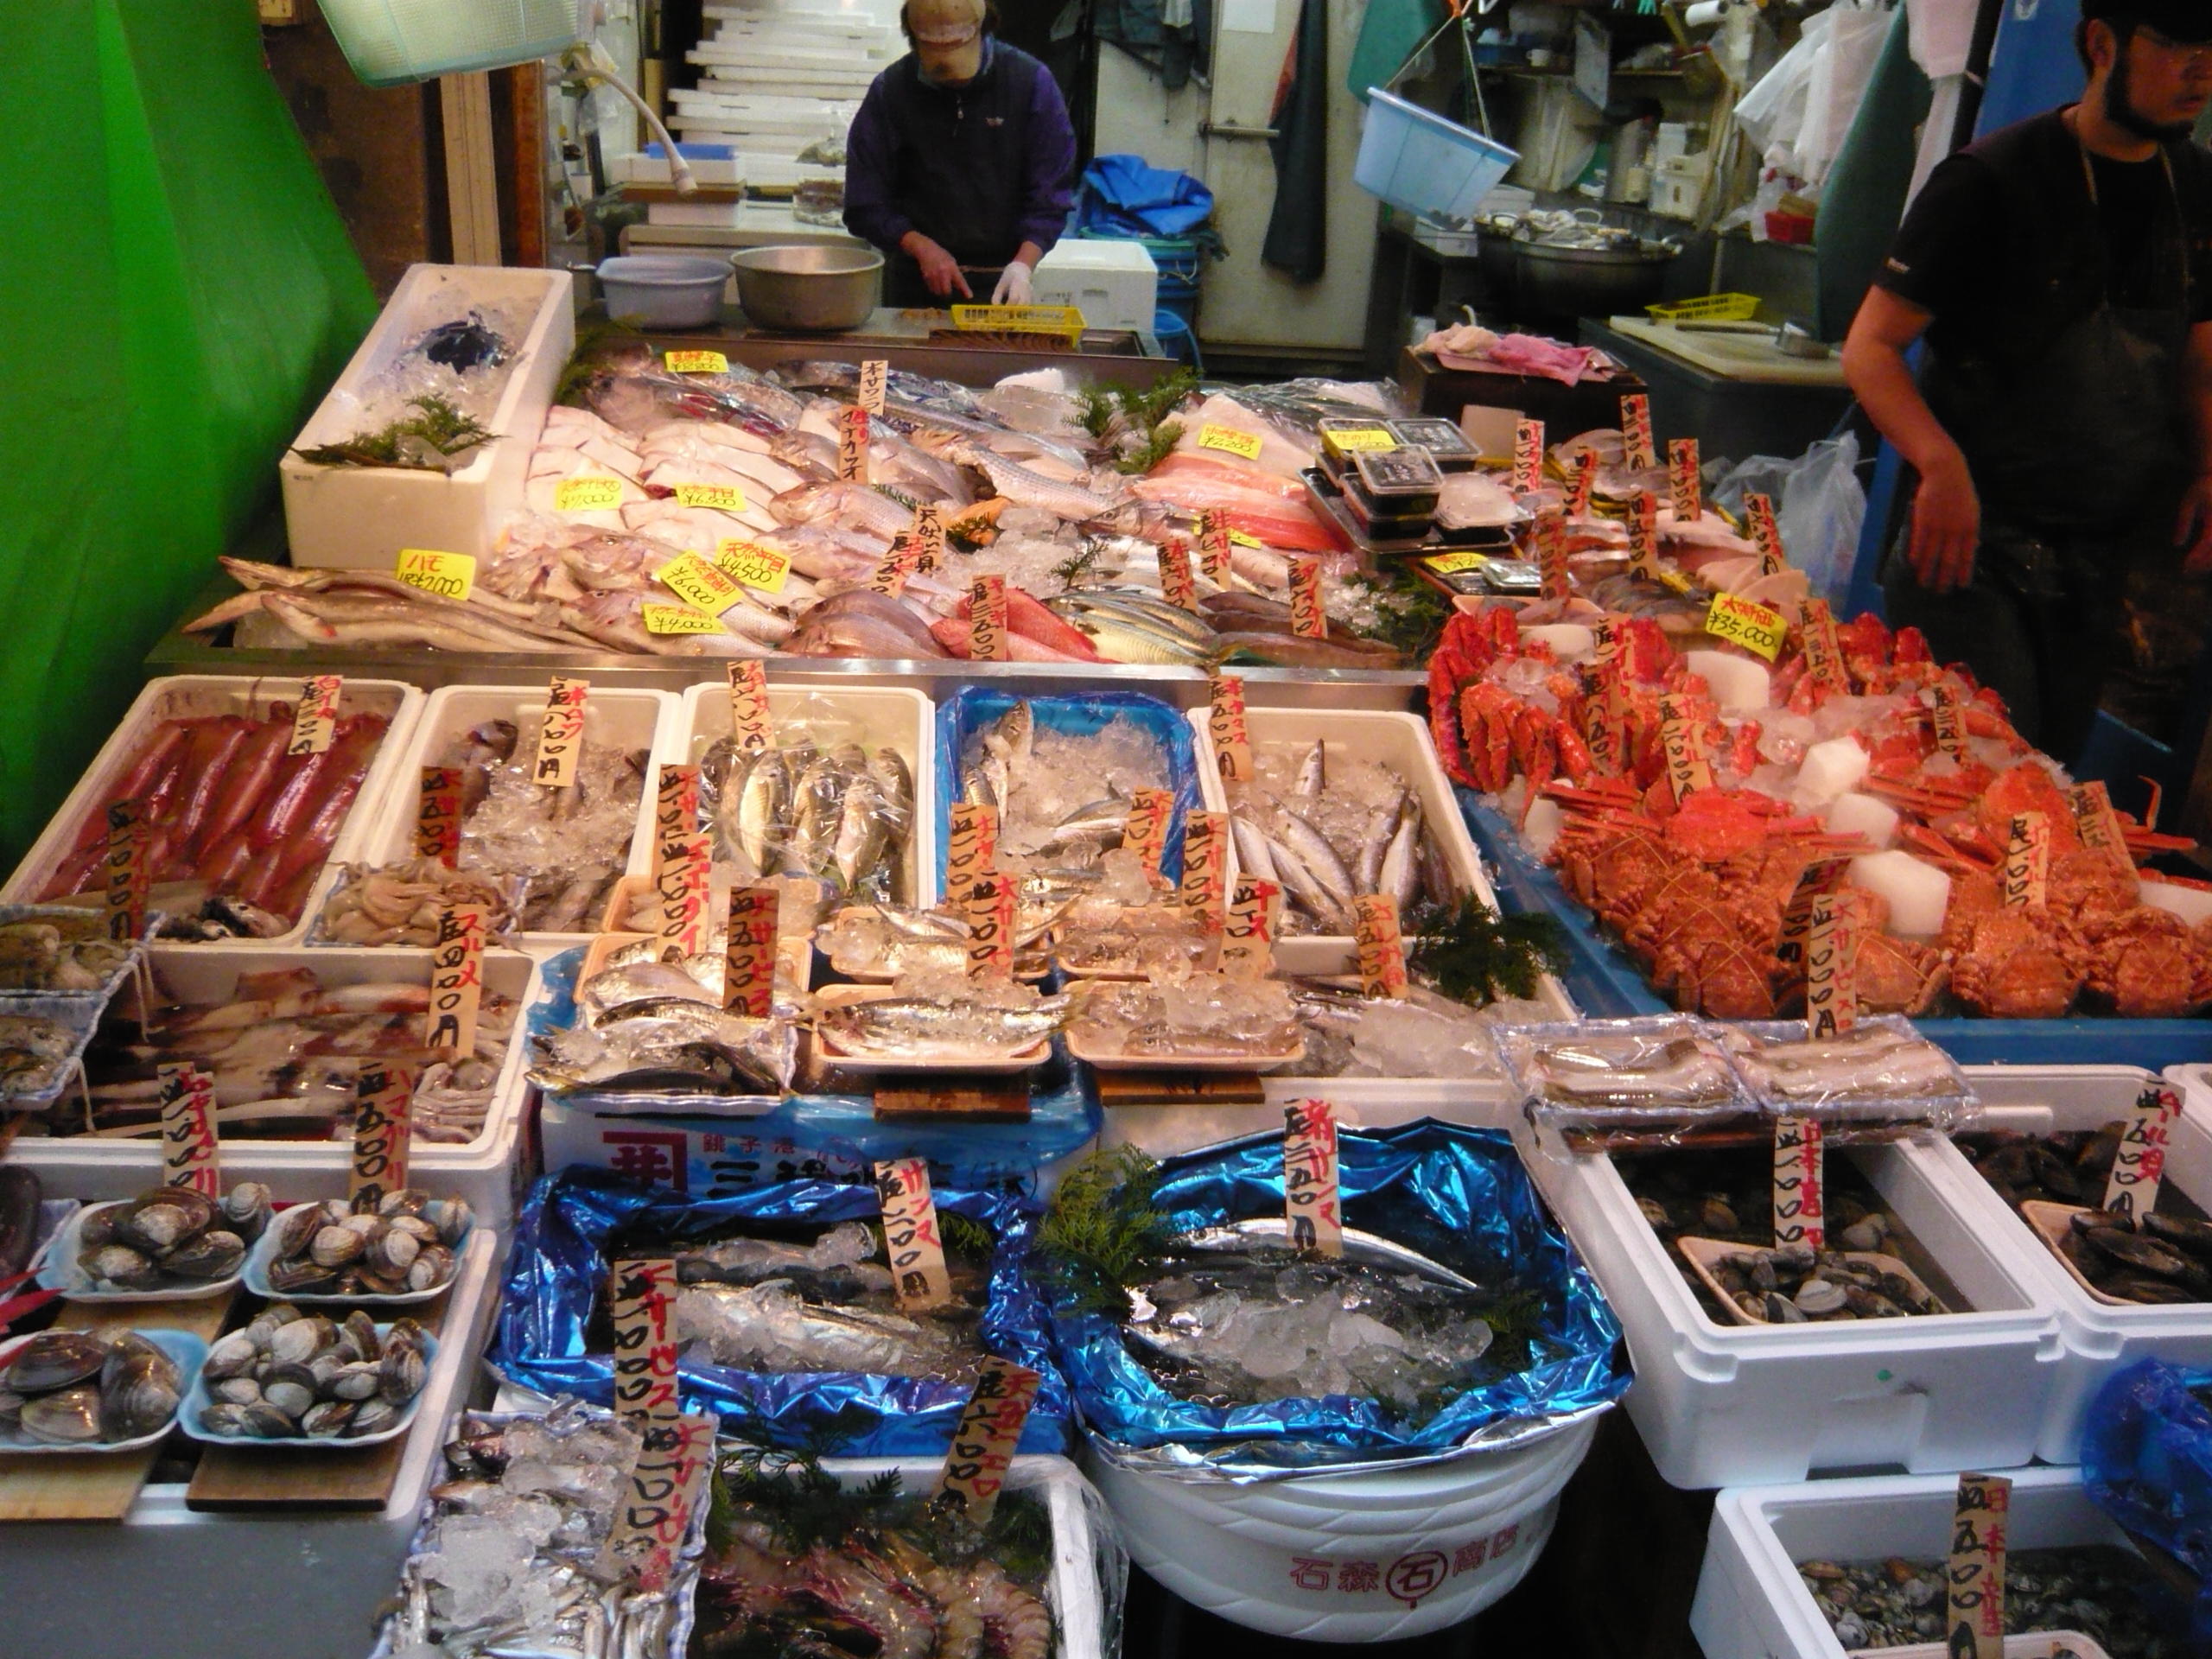 Цукидзи рыбный рынок в токио фото